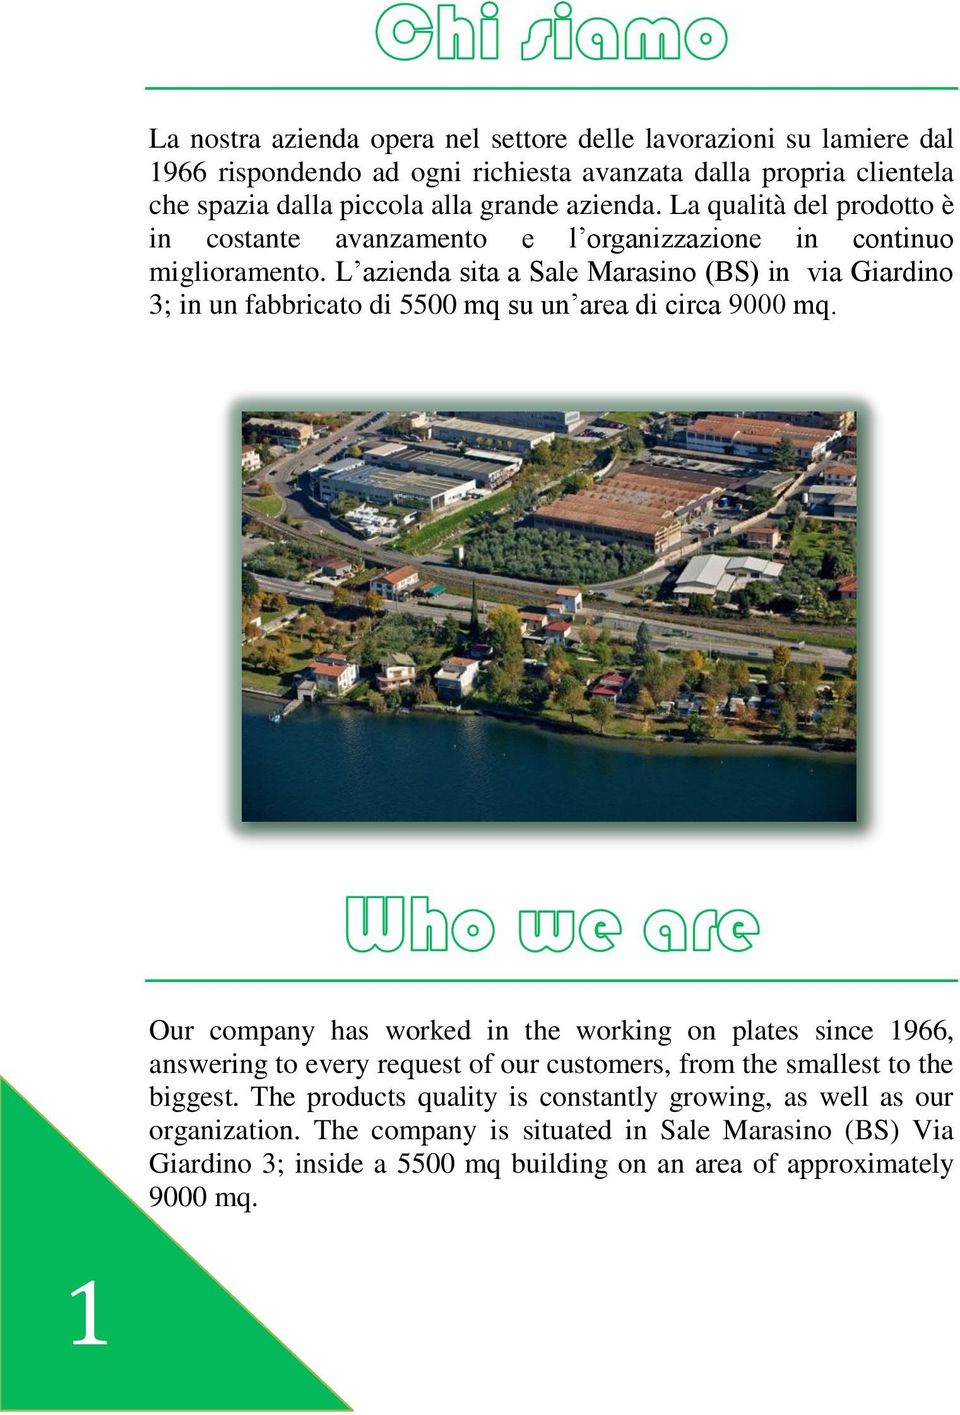 L azienda sita a Sale Marasino (BS) in via Giardino 3; in un fabbricato di 5500 mq su un area di circa 9000 mq.